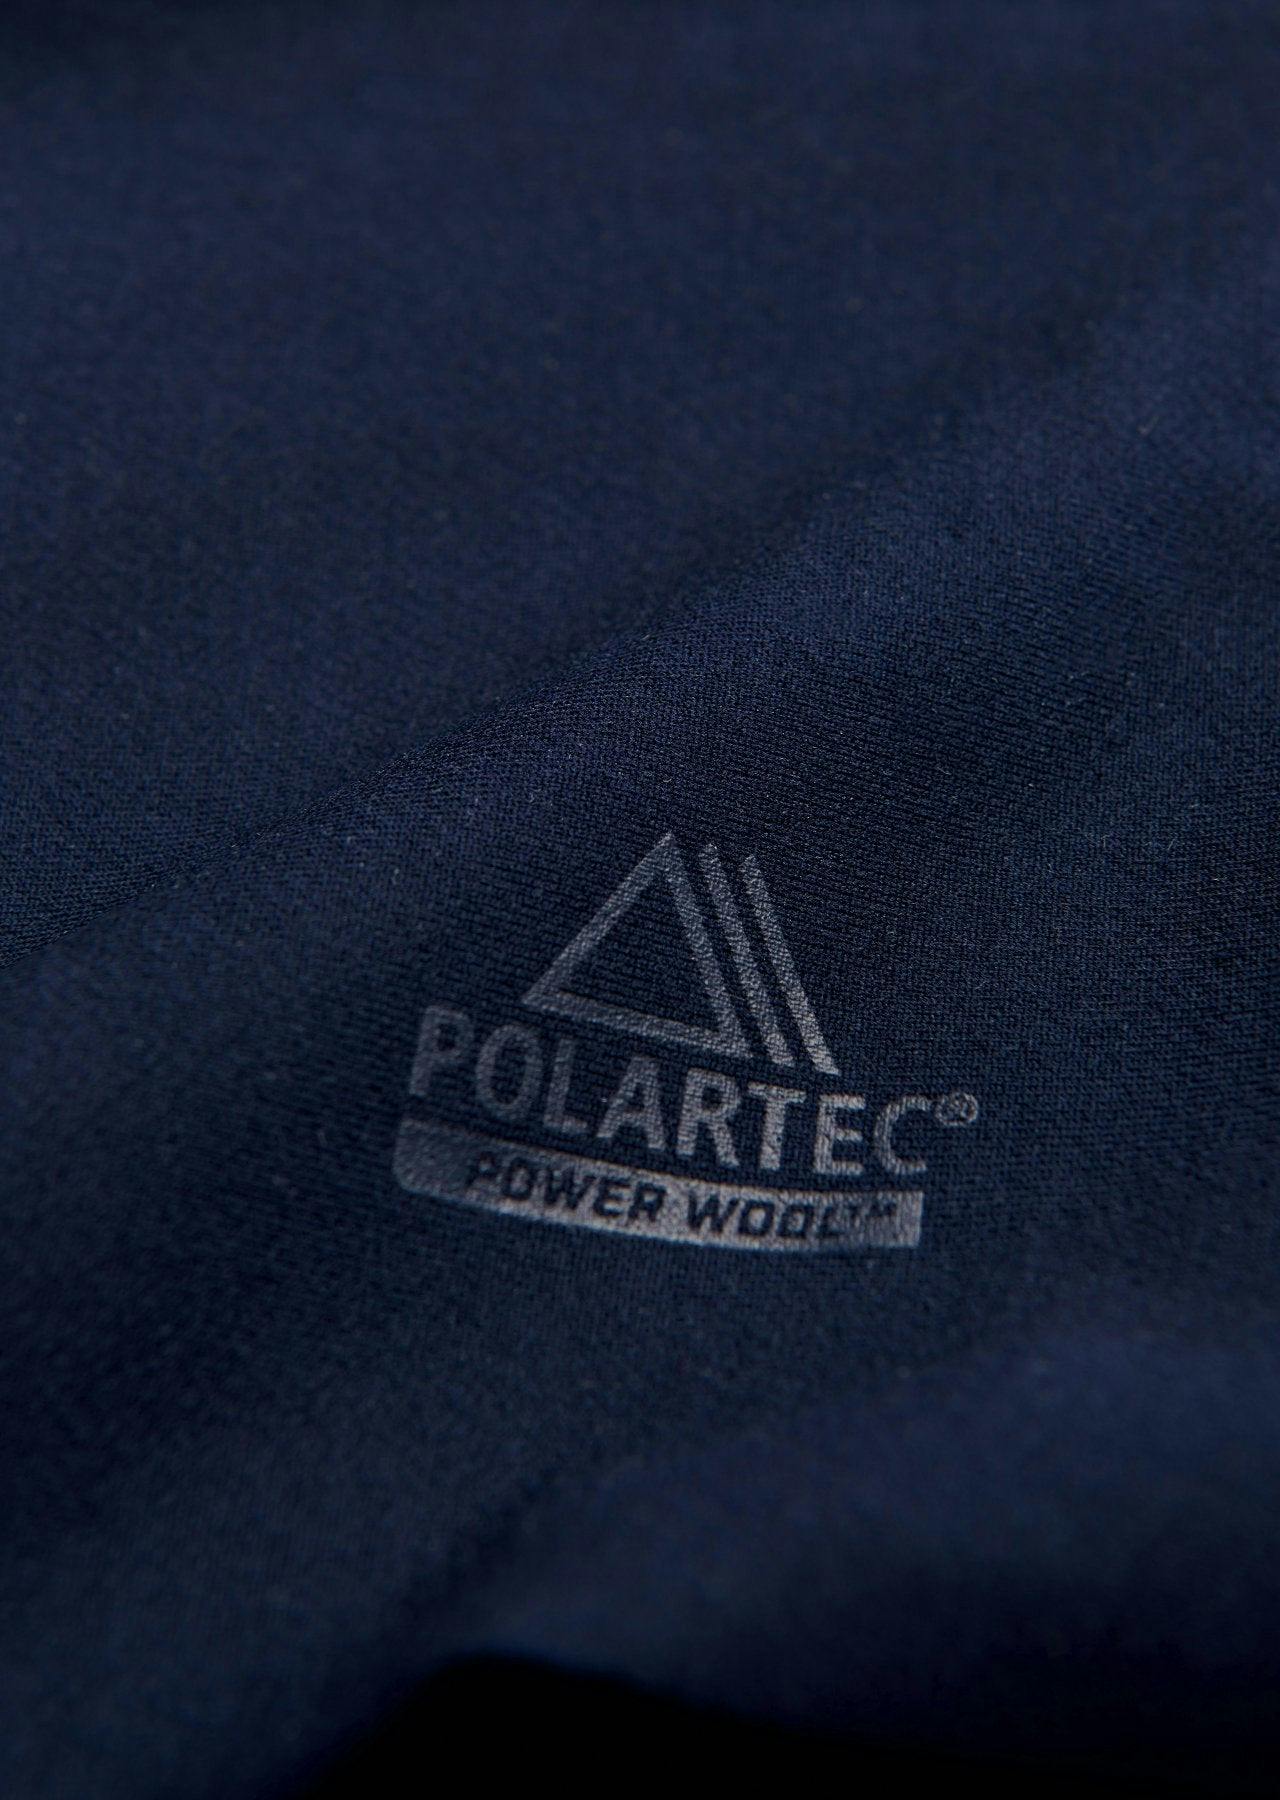 Polartec ® Team Neck Warmer